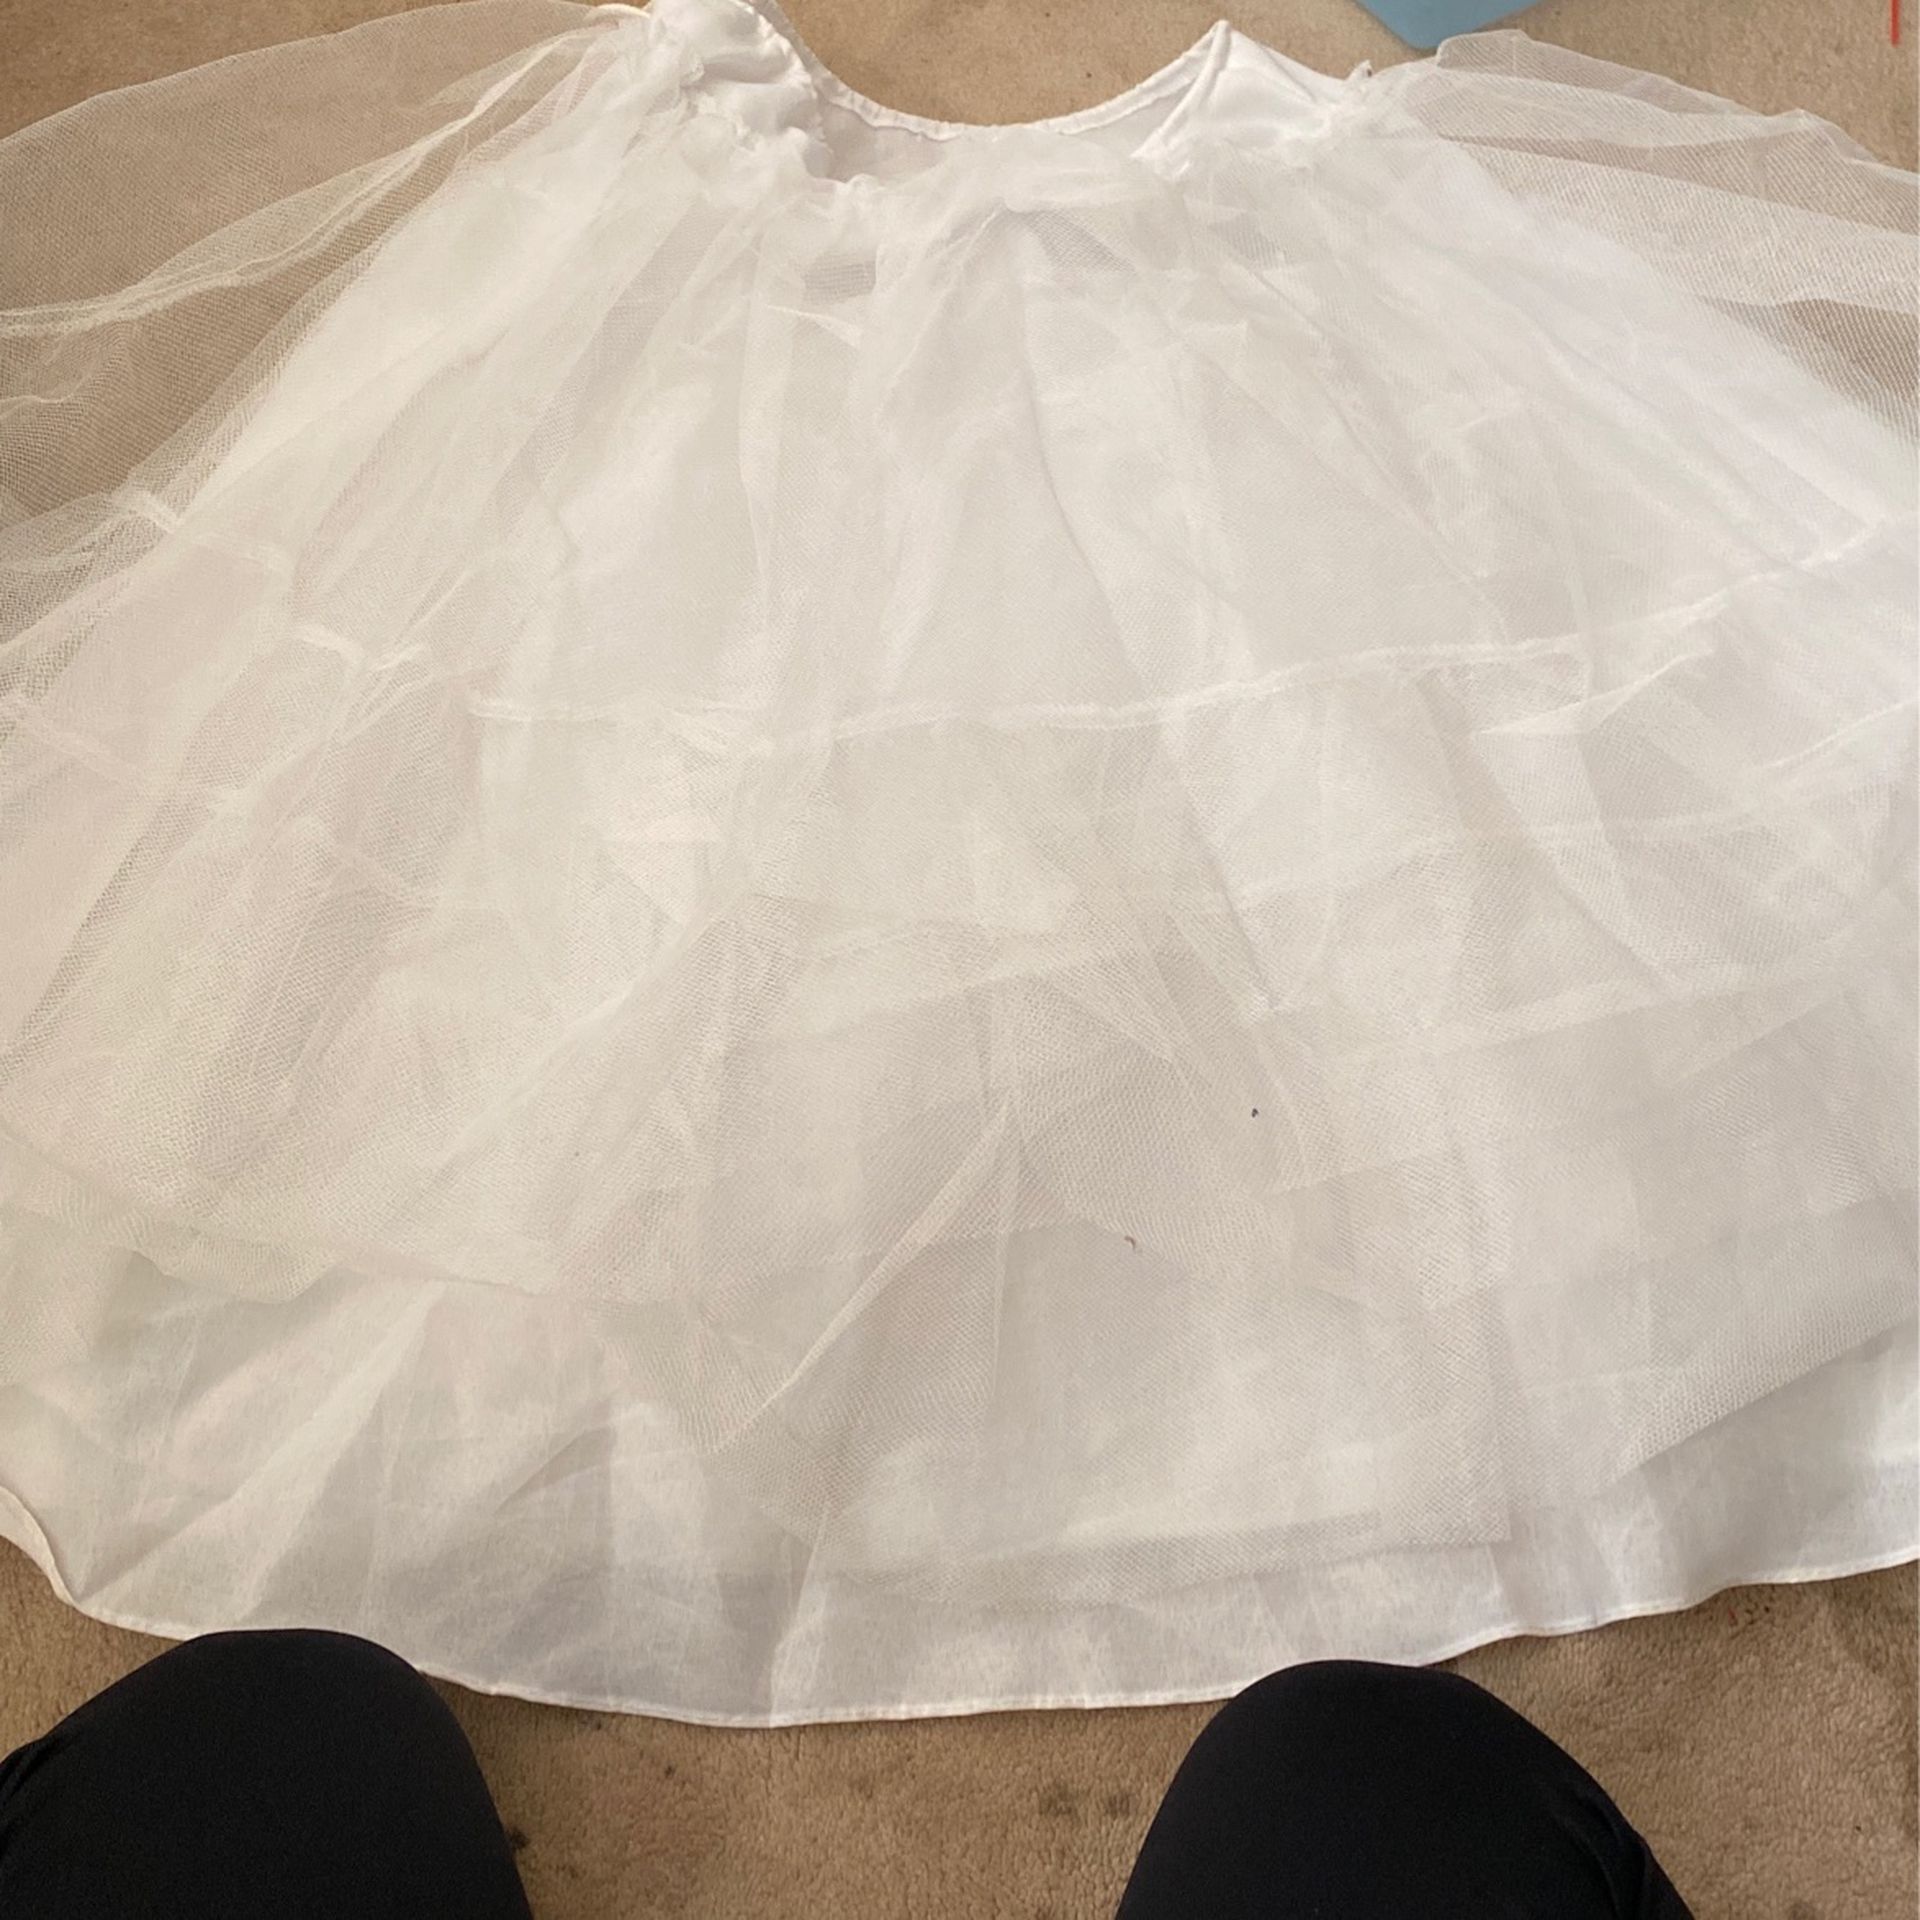 Petticoat Skirt Tulle For Girls